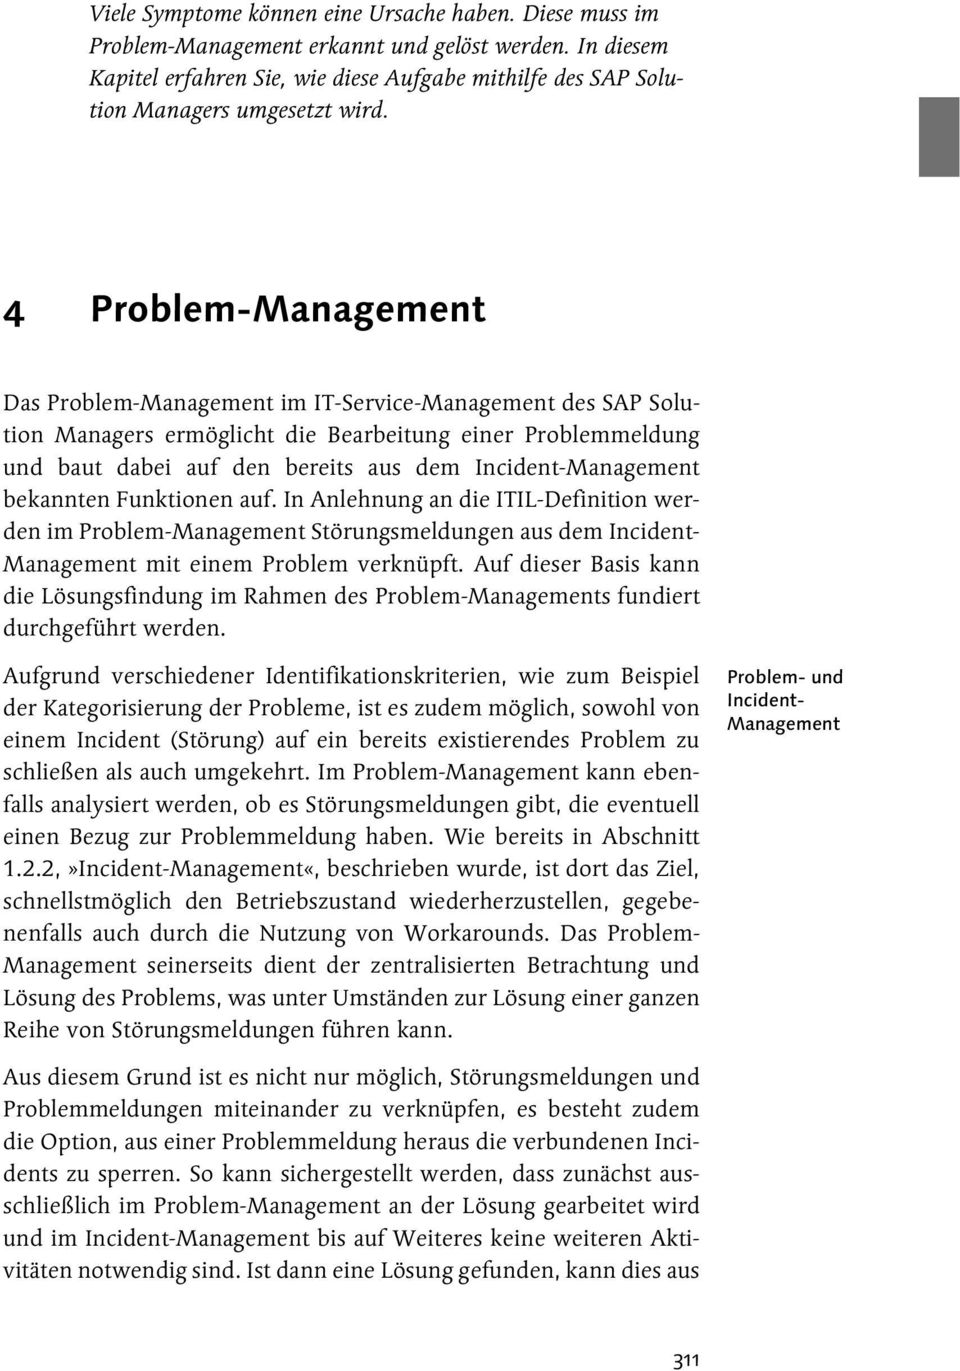 4 Problem-Management Das Problem-Management im IT-Service-Management des SAP Solution Managers ermöglicht die Bearbeitung einer Problemmeldung und baut dabei auf den bereits aus dem